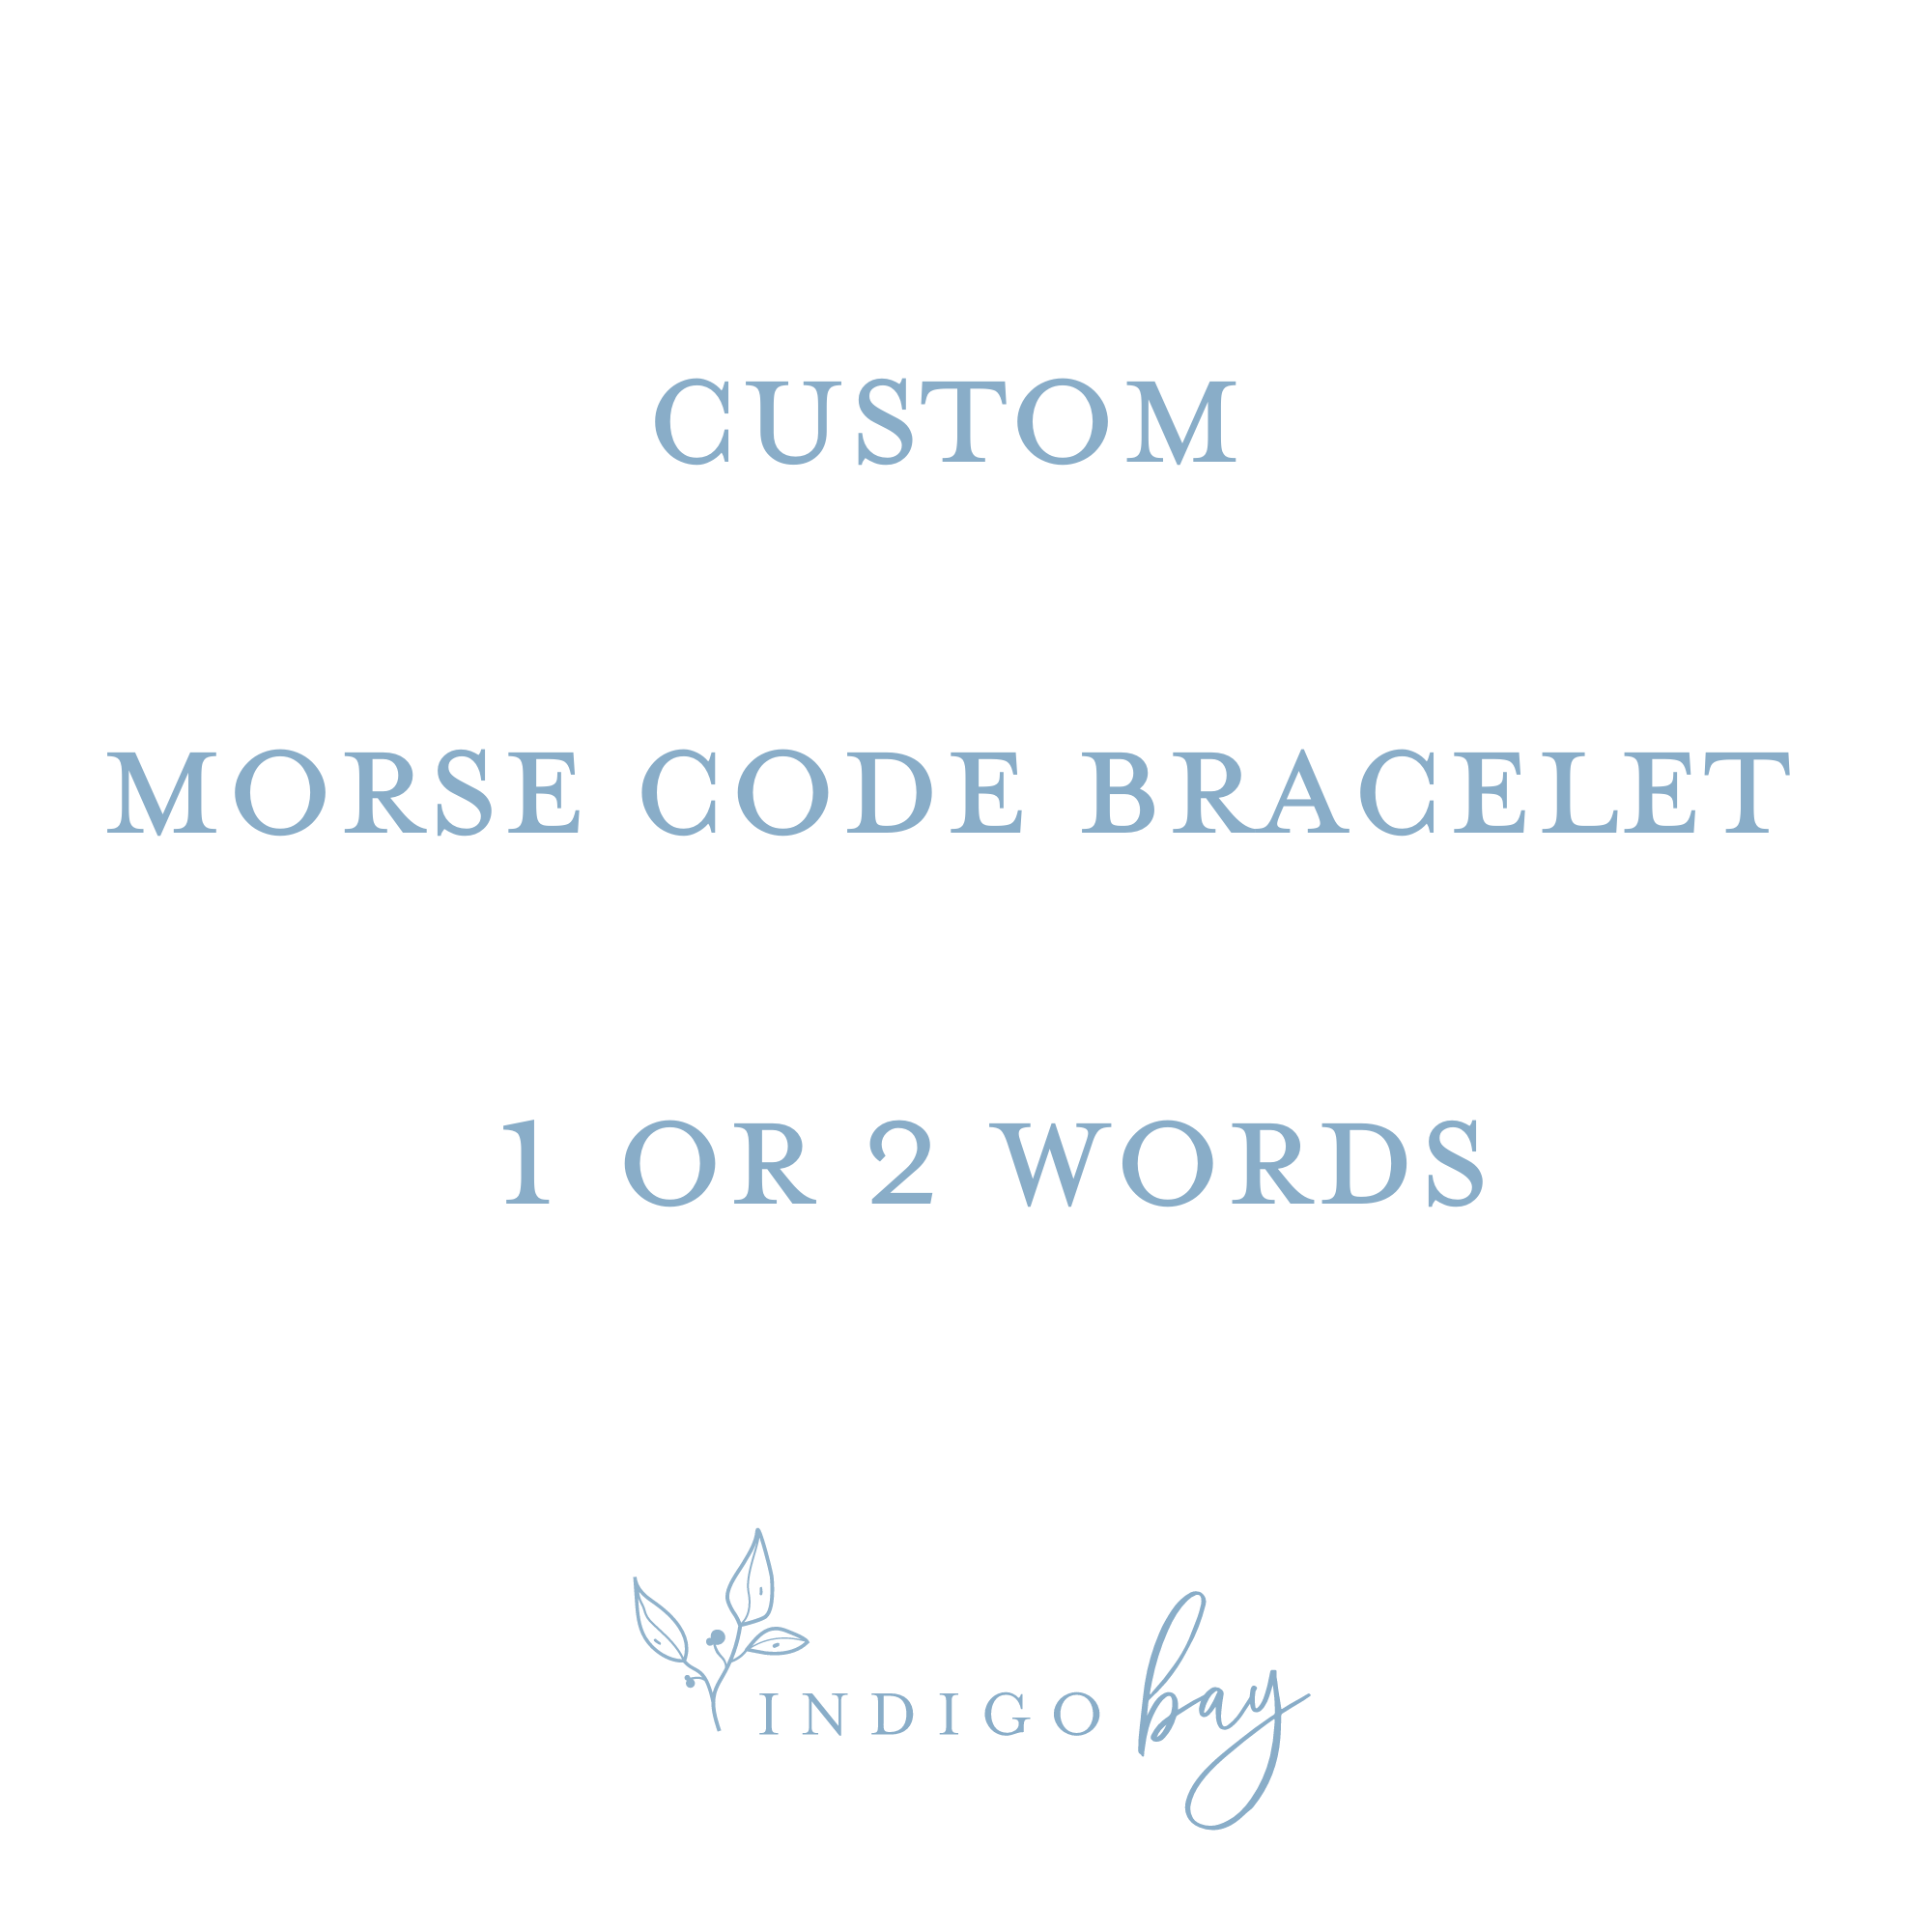 Make Your Own Morse Code Bracelet Kit